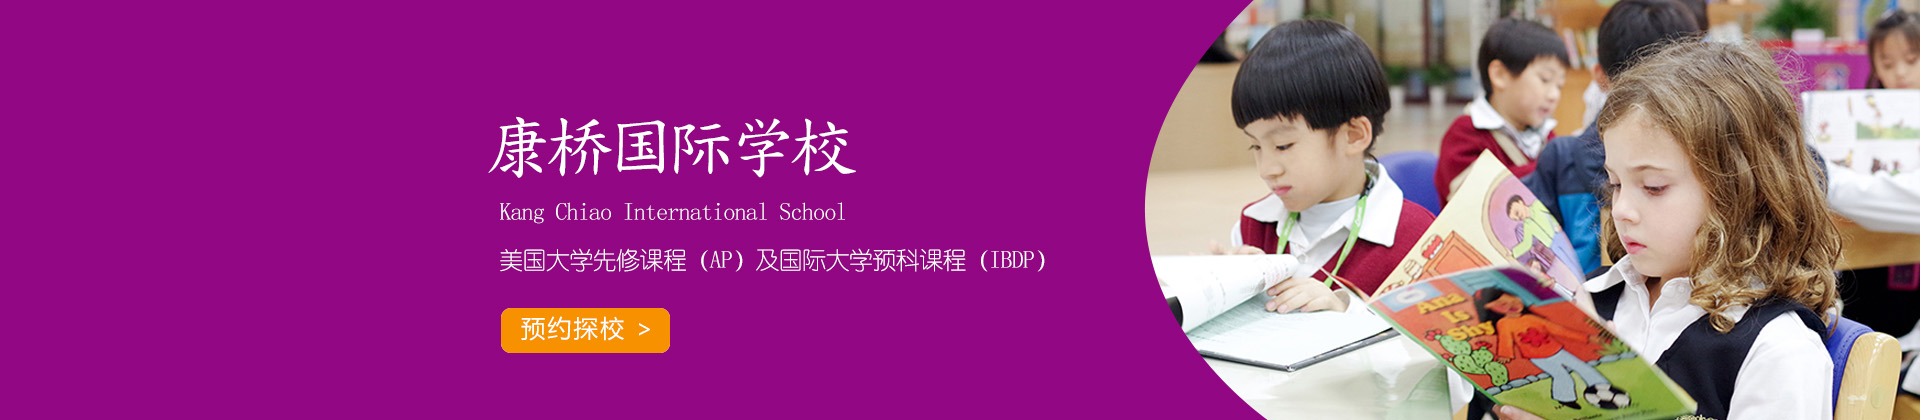 上海康桥国际学校